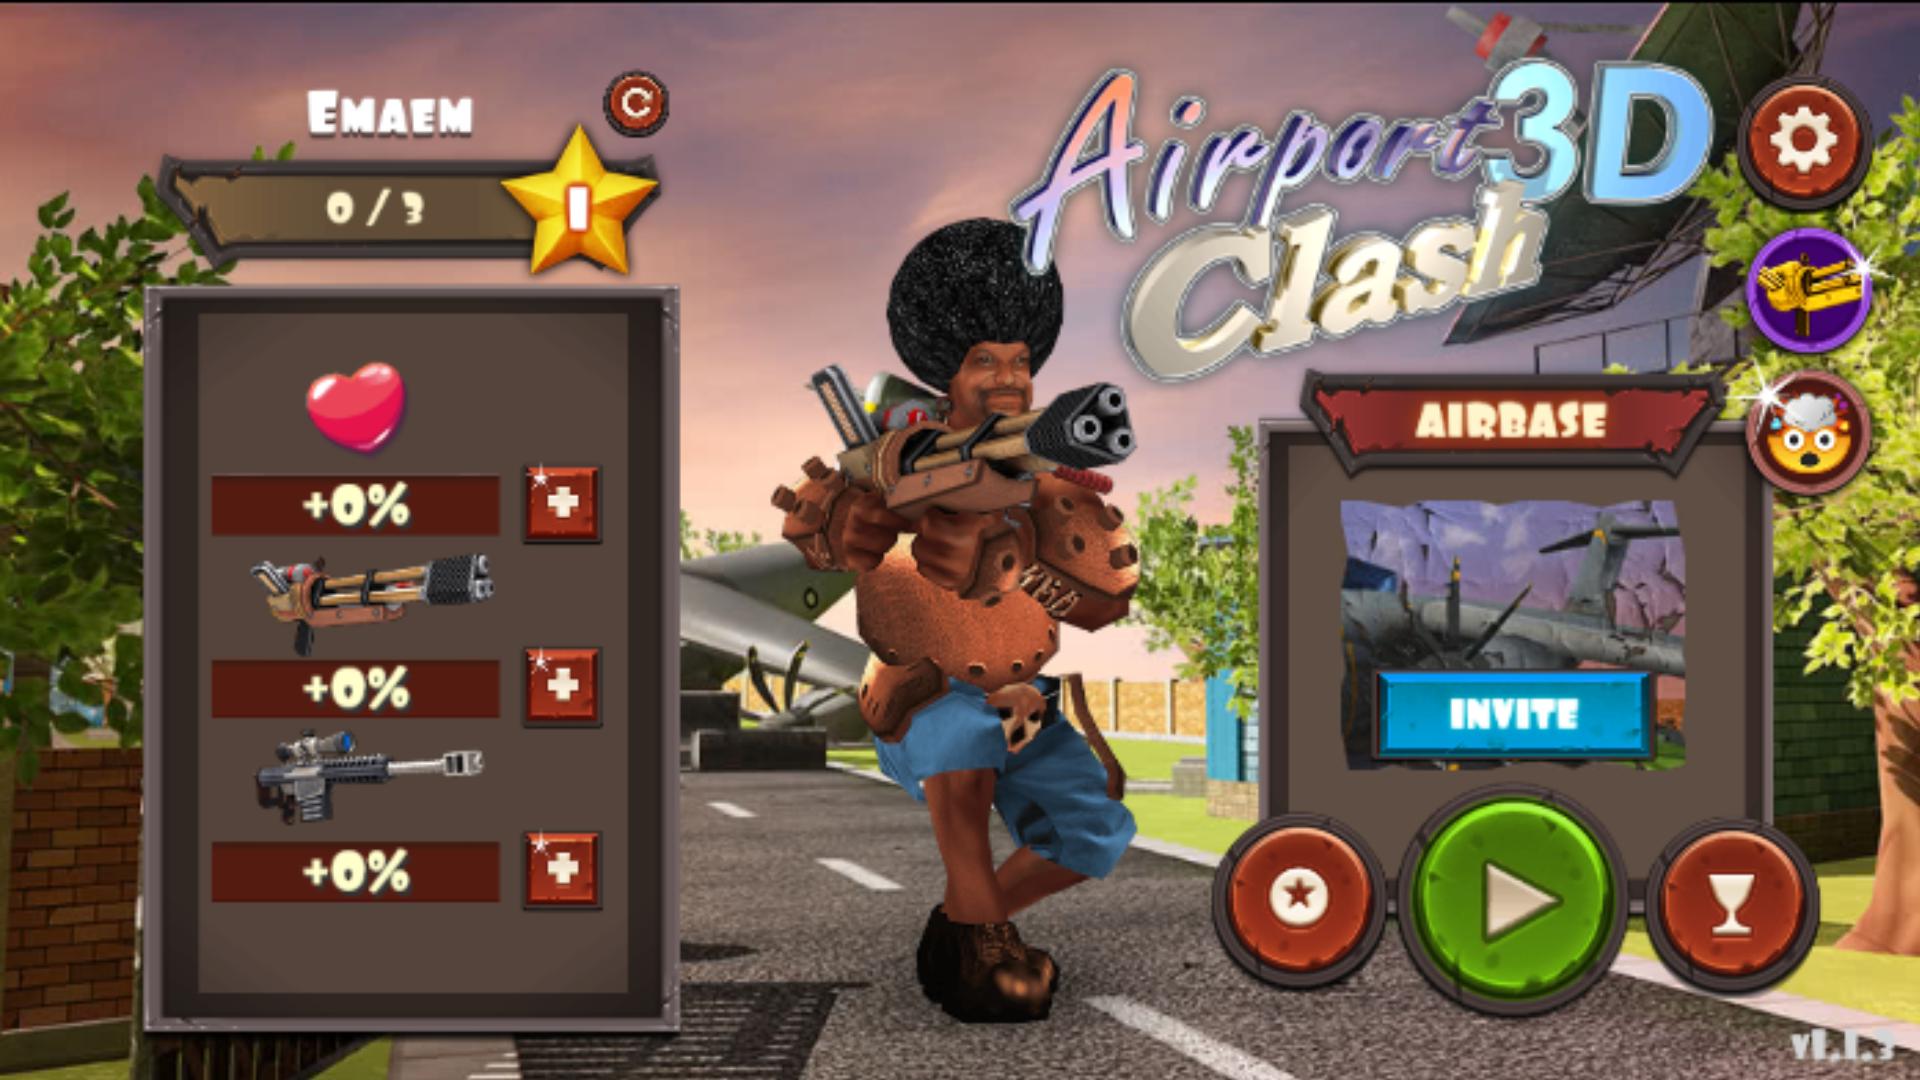 Rocket Clash 3D Third person shooter multiplayer 1.3.14 Screenshot 16